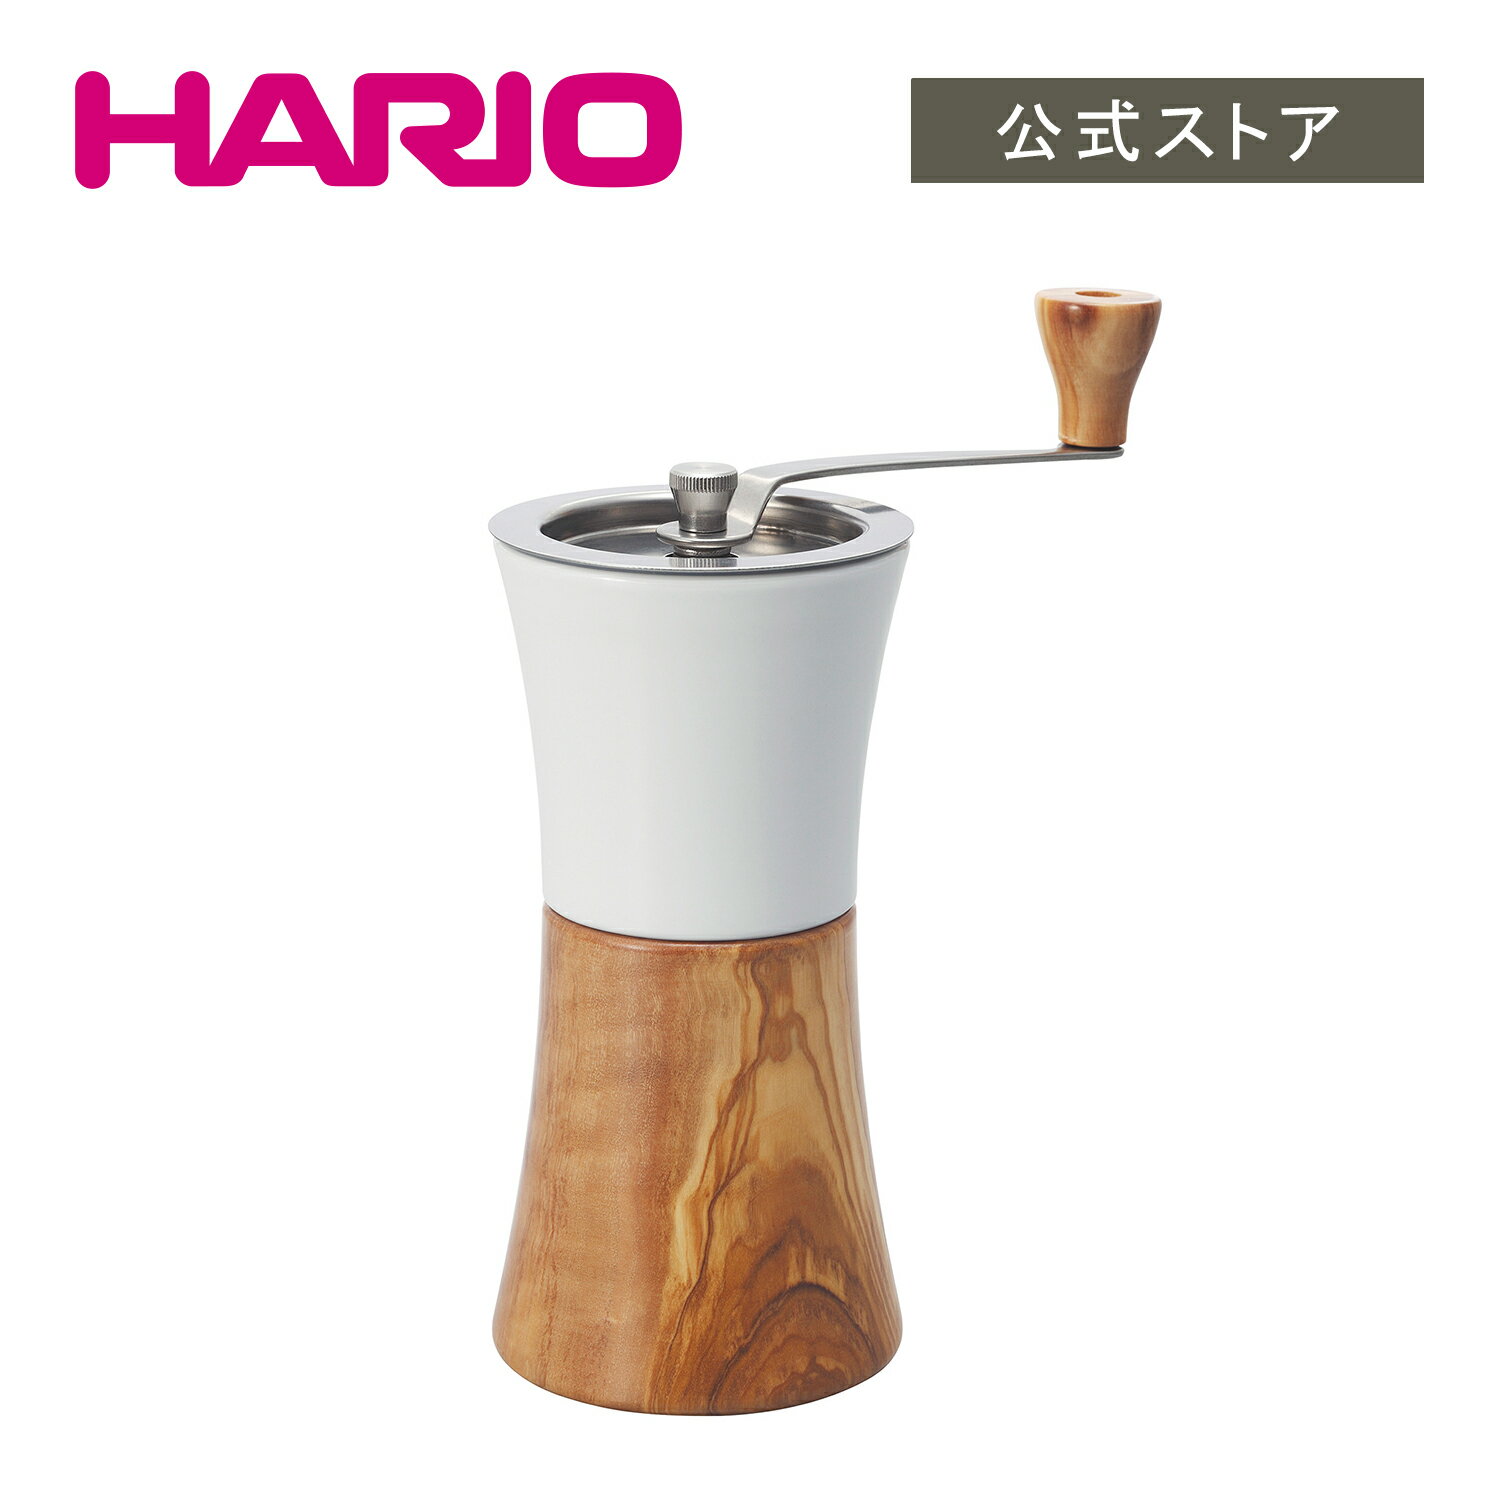 楽天HARIO公式NETSHOP楽天市場店【公式ショップ】HARIO セラミックコーヒーミル・ウッド